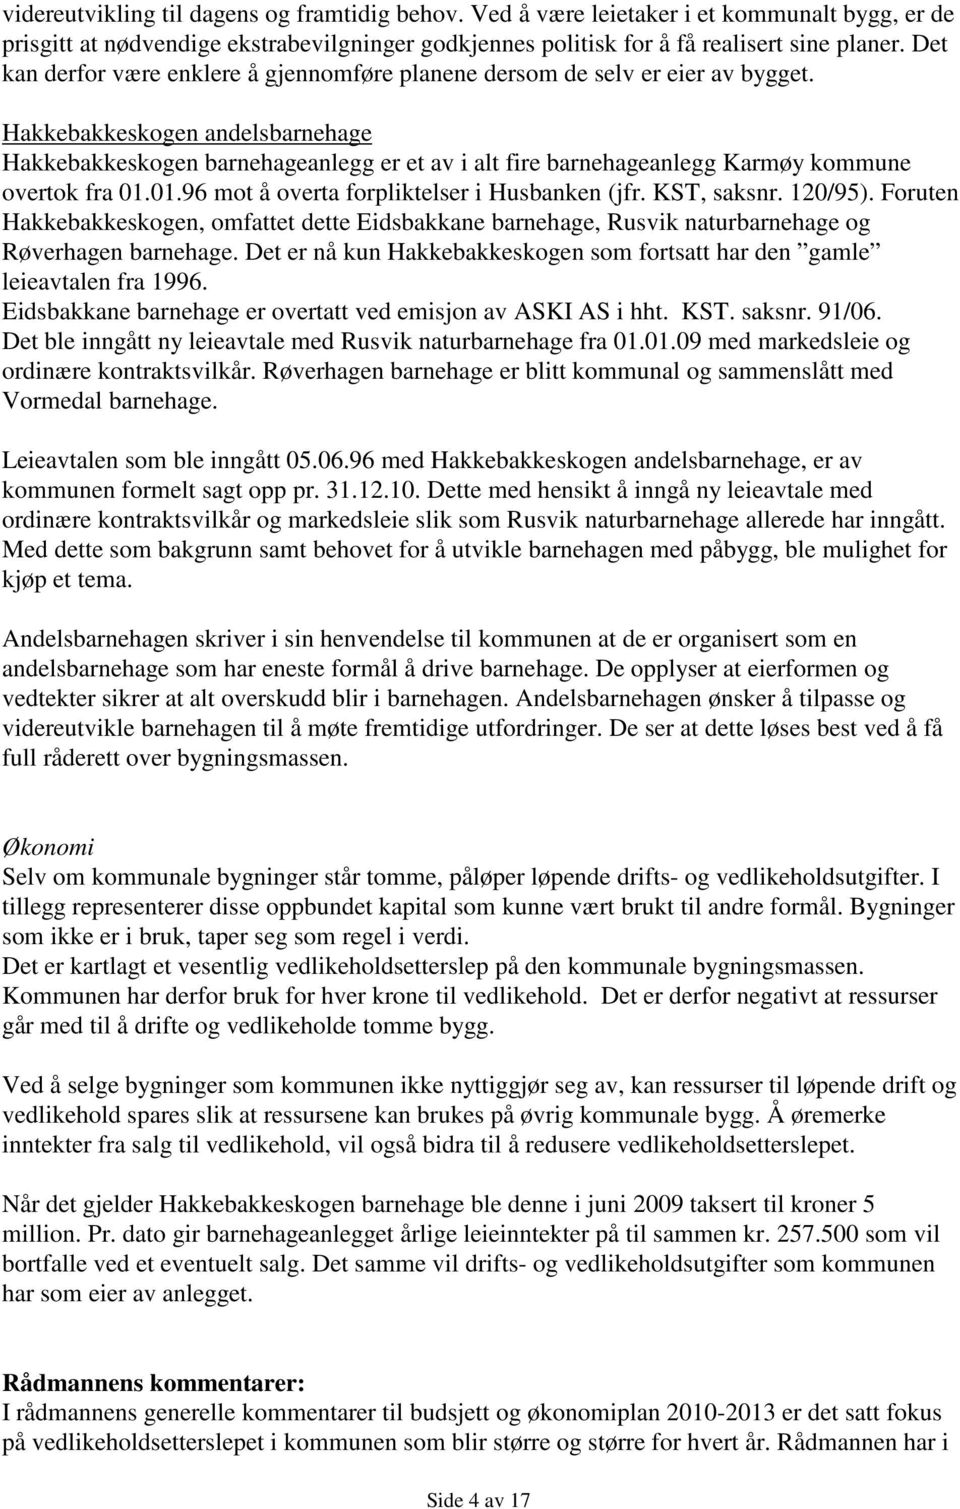 Hakkebakkeskogen andelsbarnehage Hakkebakkeskogen barnehageanlegg er et av i alt fire barnehageanlegg Karmøy kommune overtok fra 01.01.96 mot å overta forpliktelser i Husbanken (jfr. KST, saksnr.